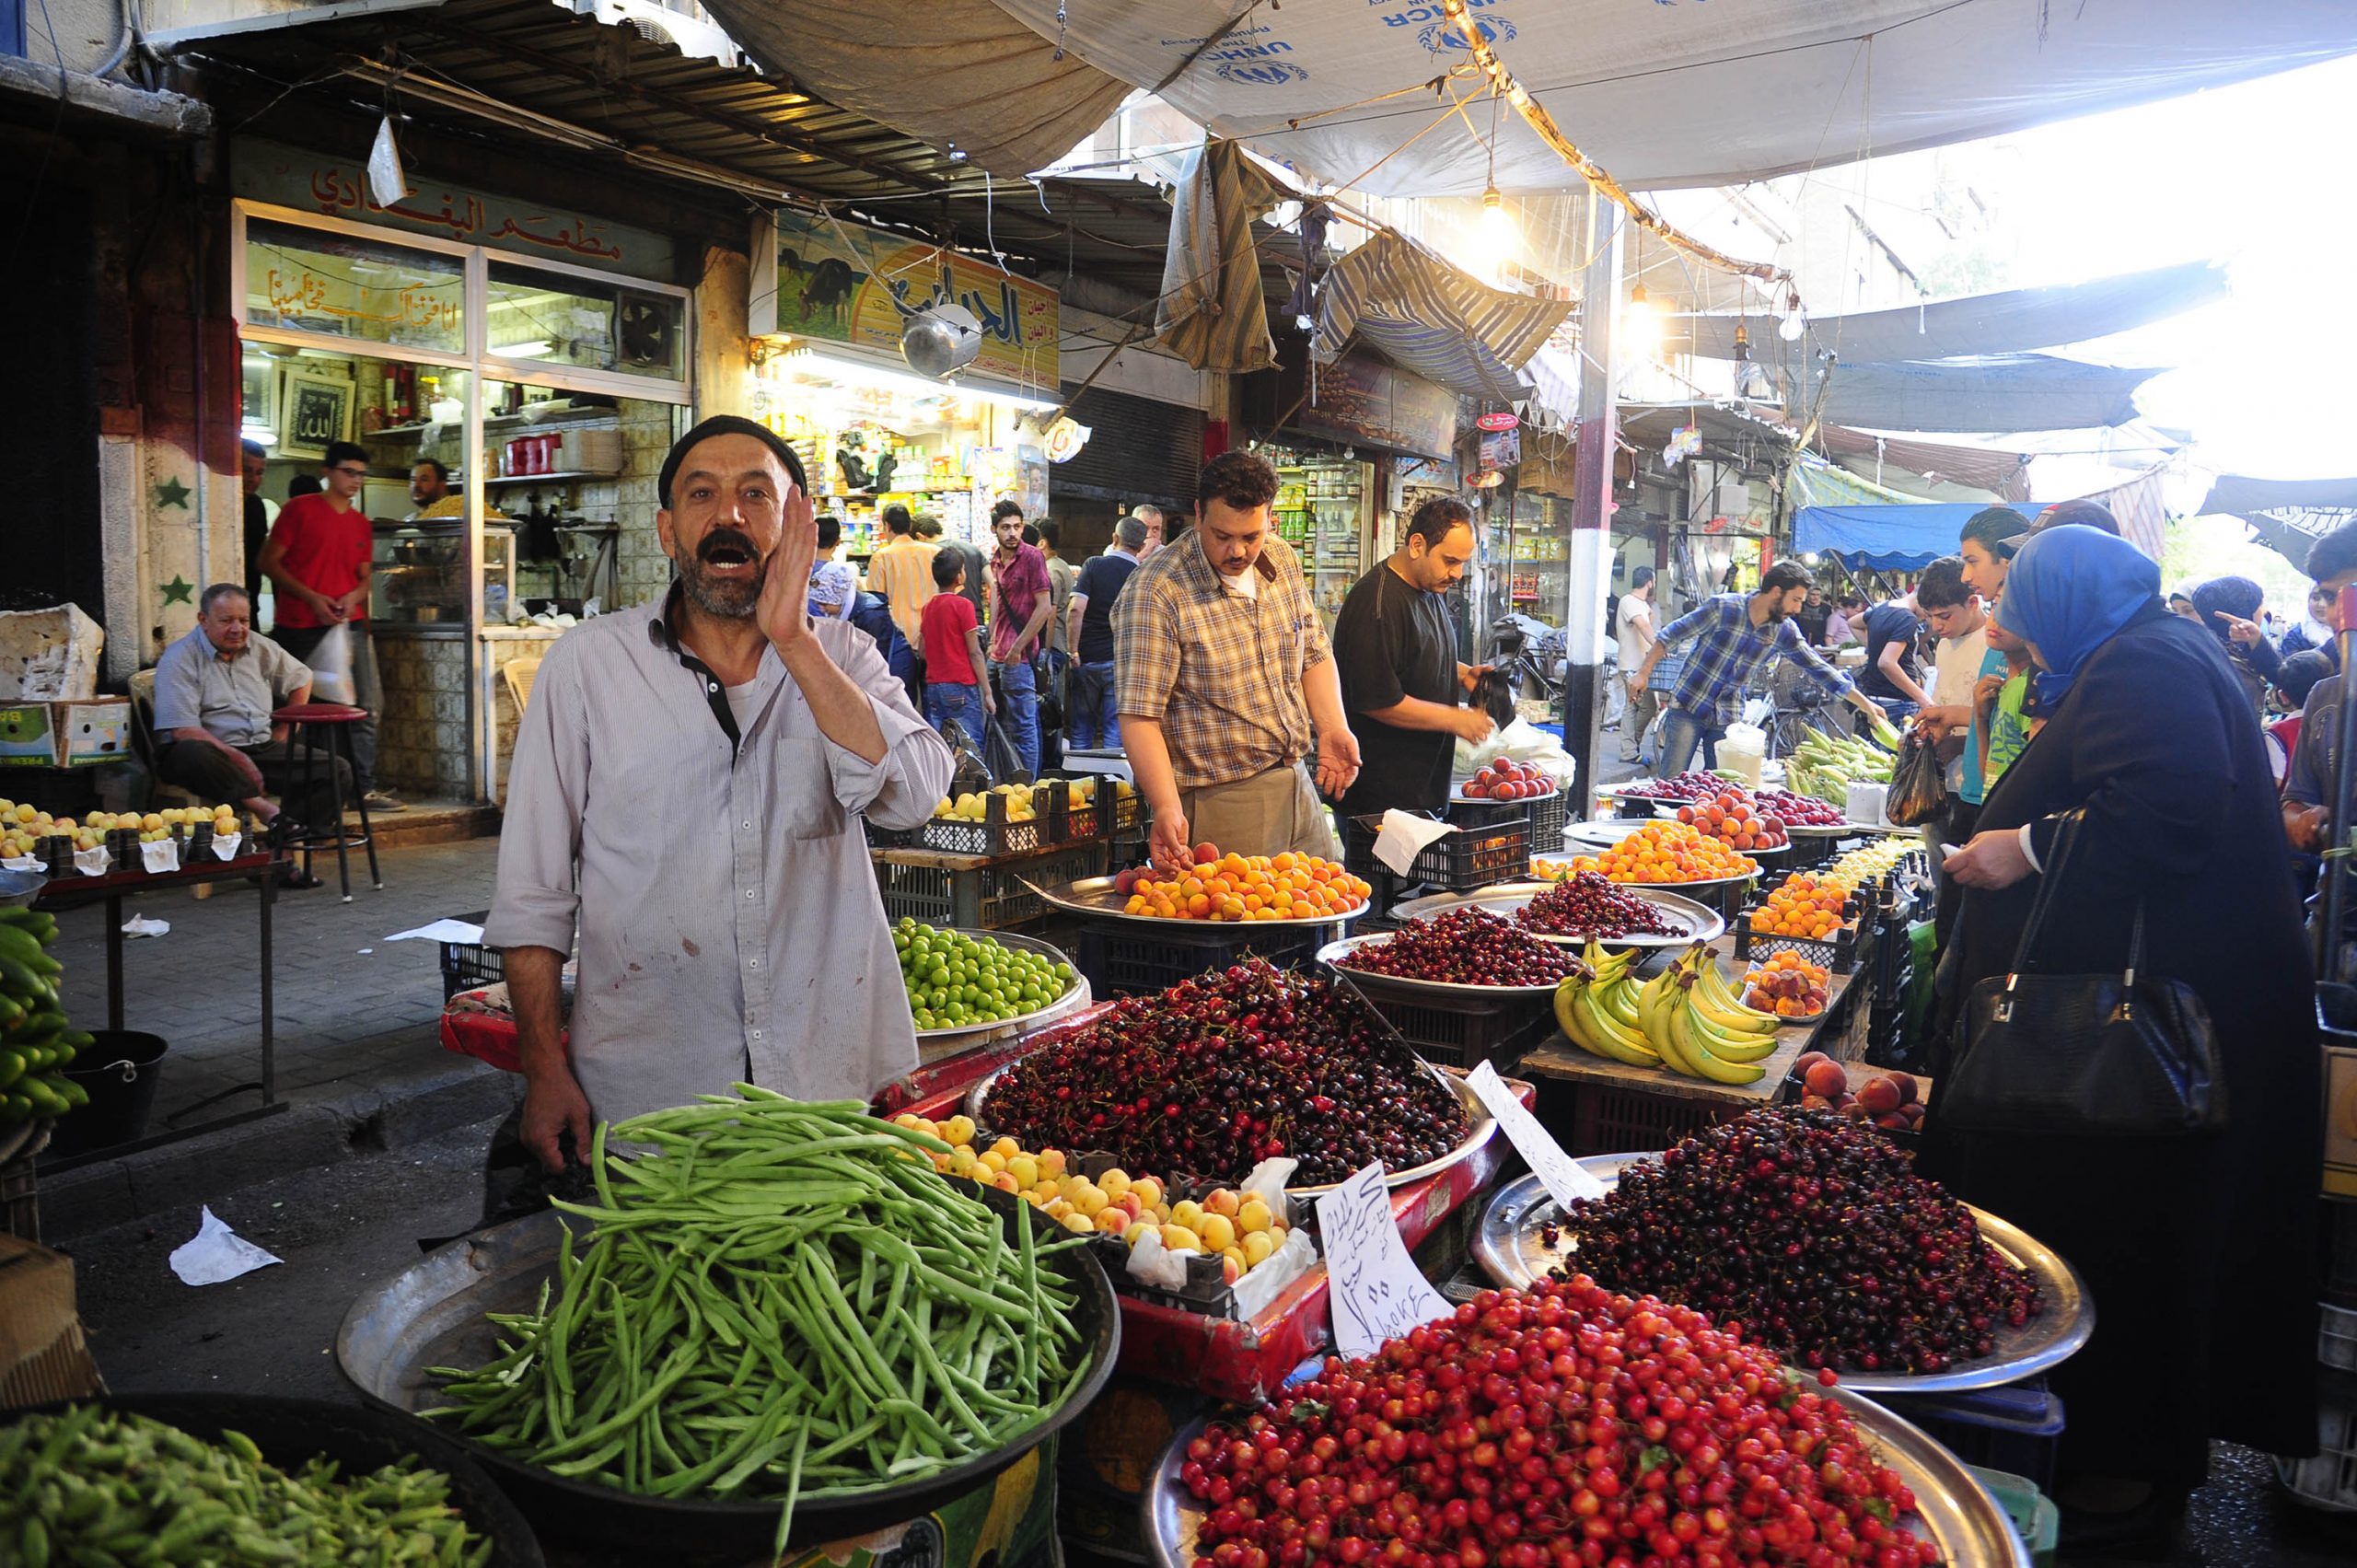 آخر أسعار الخضار والفاكهة اليوم في سوق العبور الأسعار في متناول الجميع الحق اشتري لرمضان